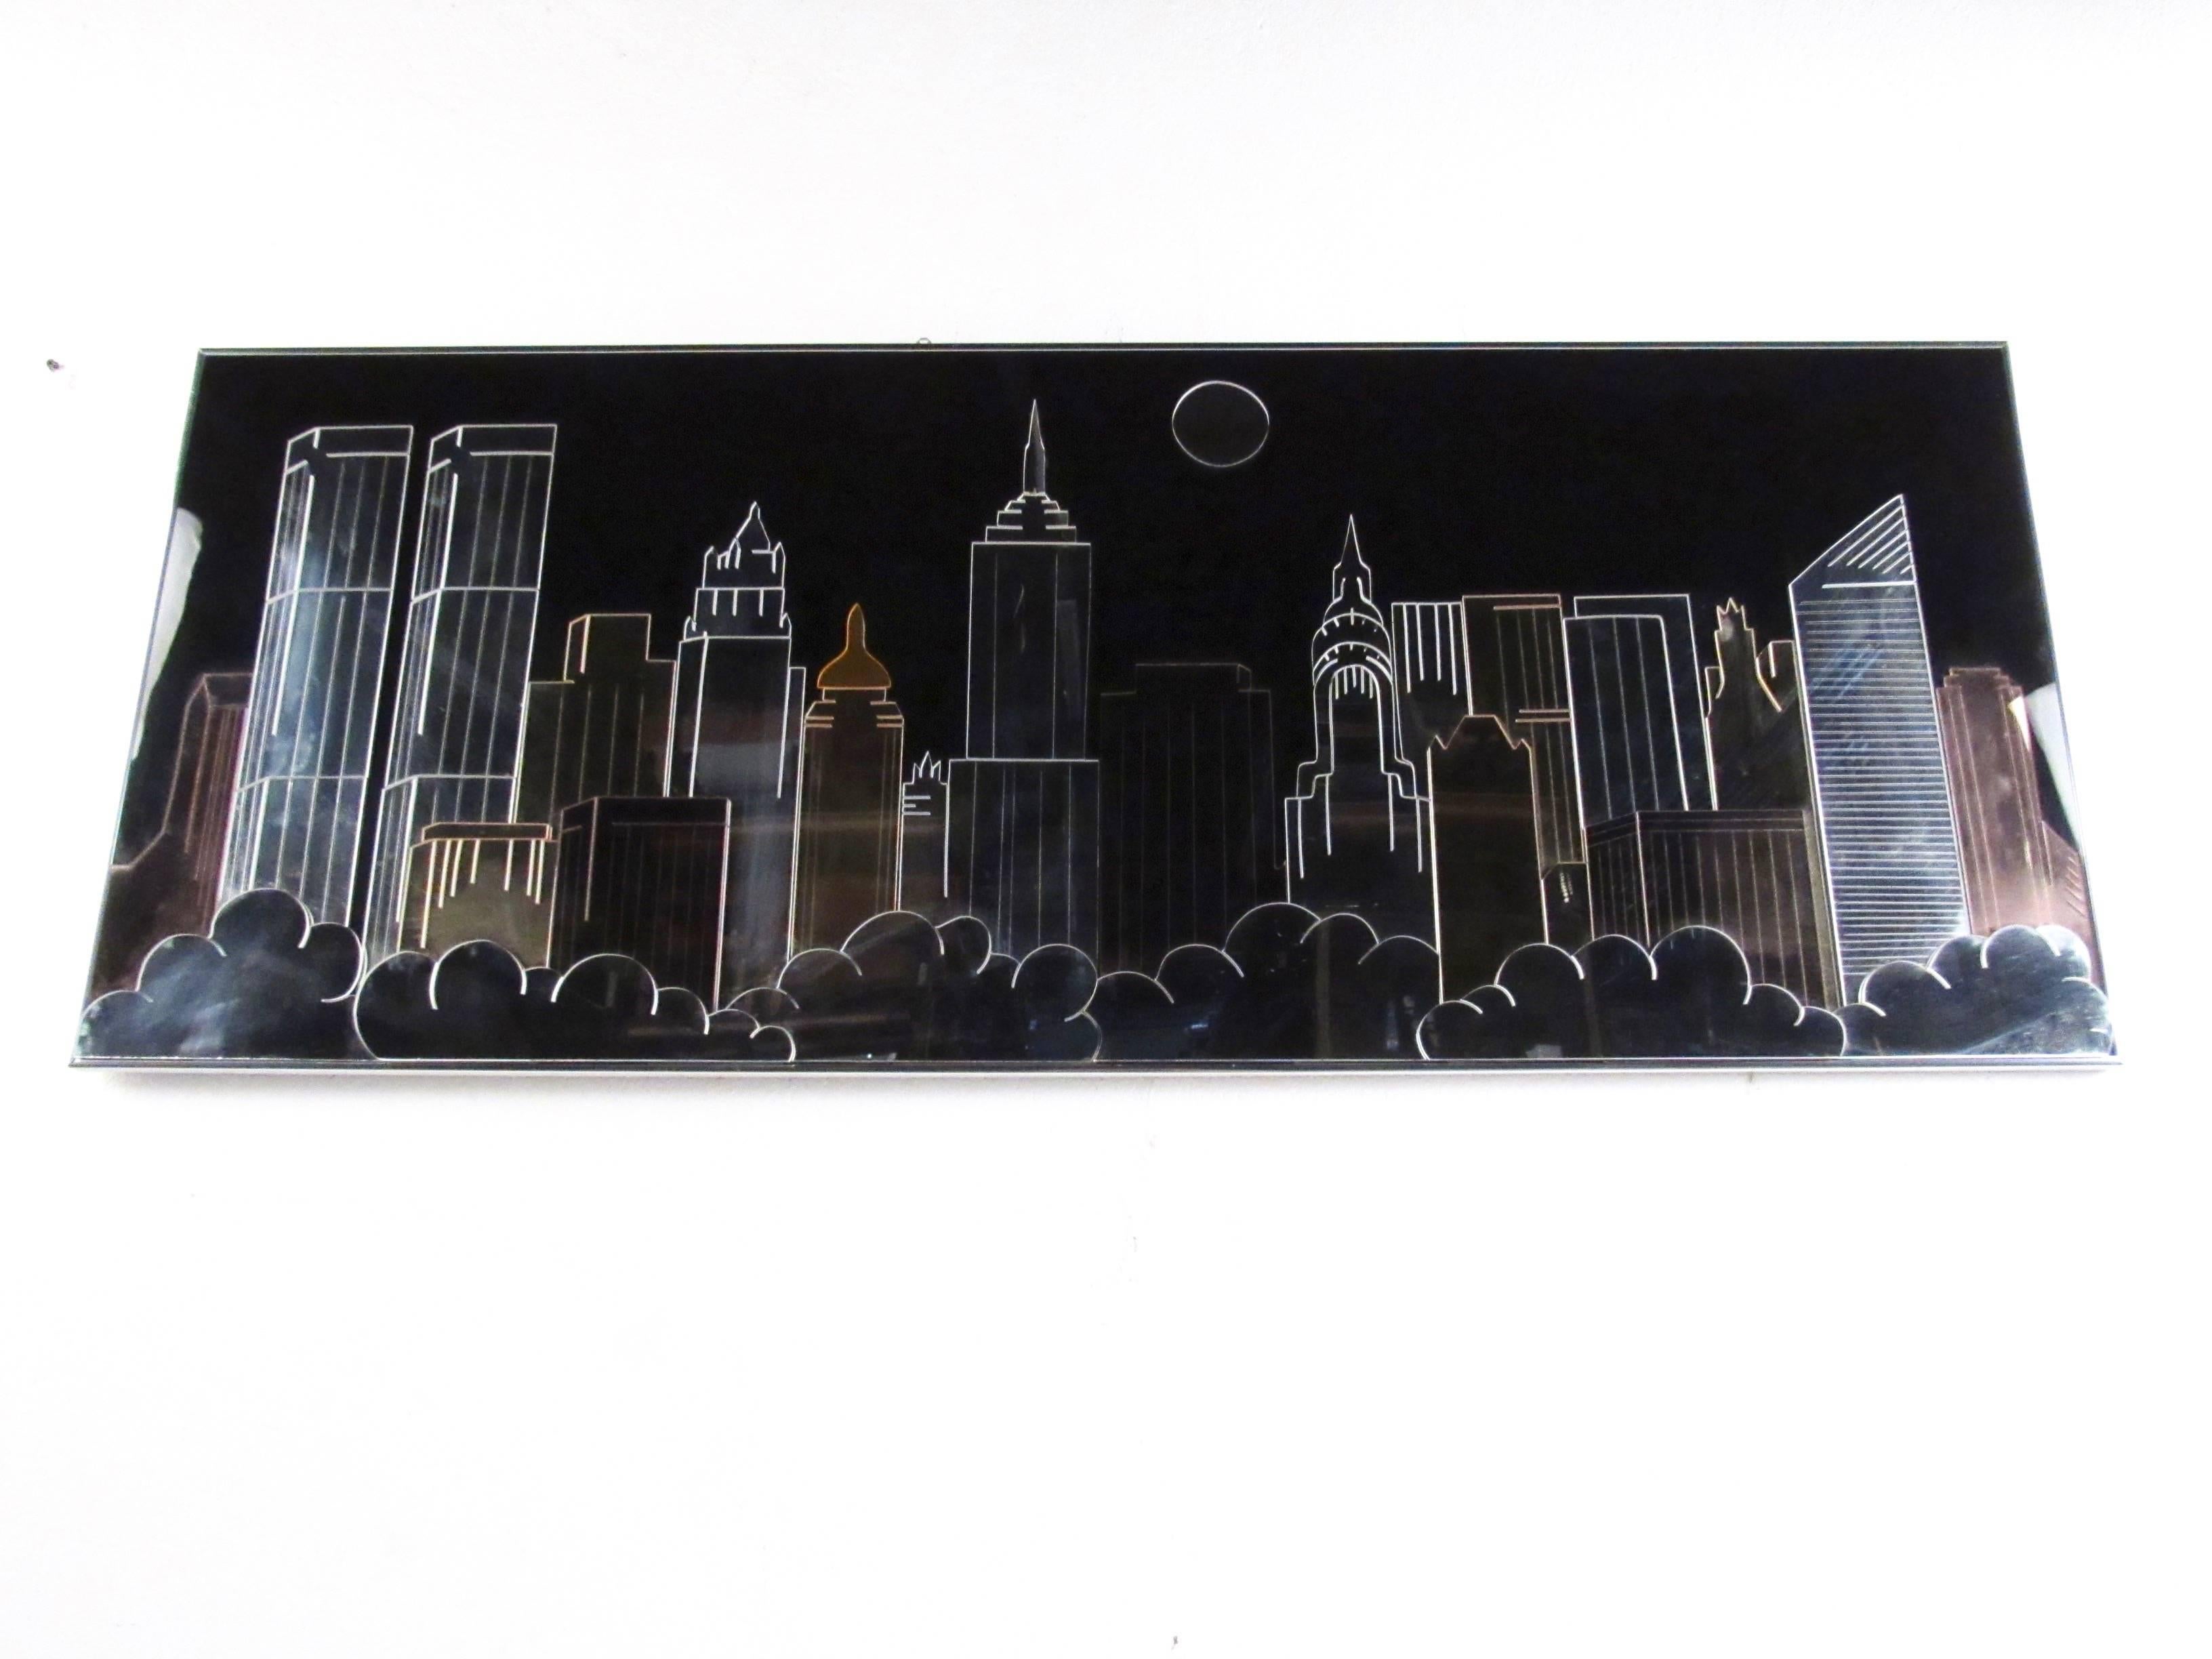 Cet élégant art mural moderne et vintage présente un mélange de métal, d'acrylique et de miroir pour créer un effet d'horizon de la ville de New York avec des tours jumelles, l'Empire State Building, et plus encore. La touche de décoration moderne